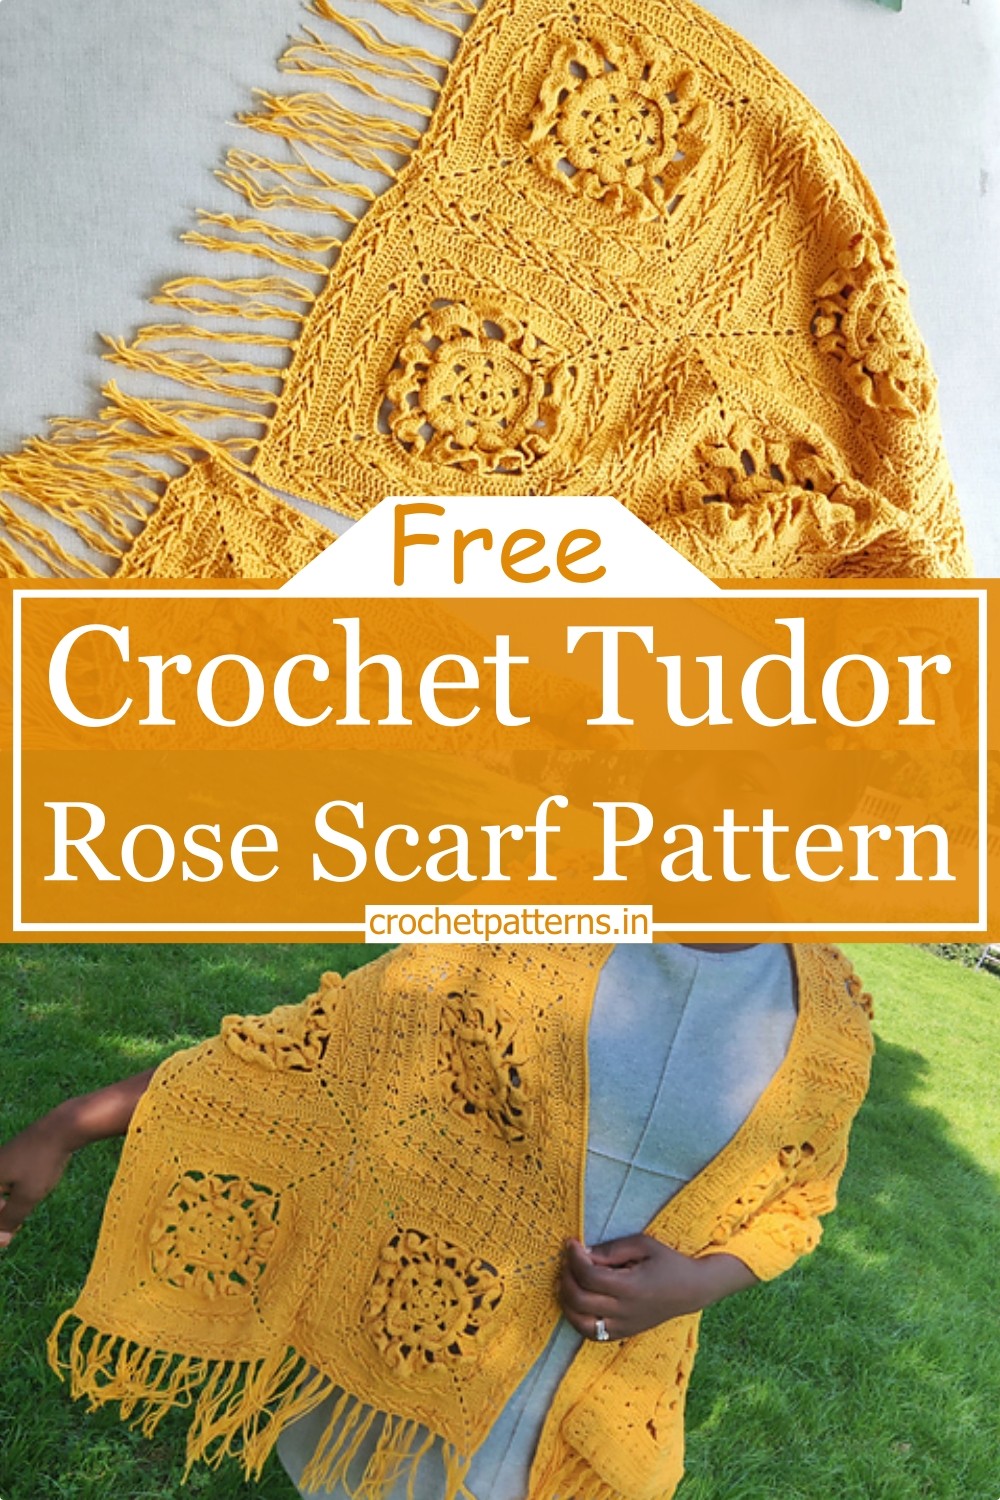 Crochet Tudor Rose Scarf Pattern